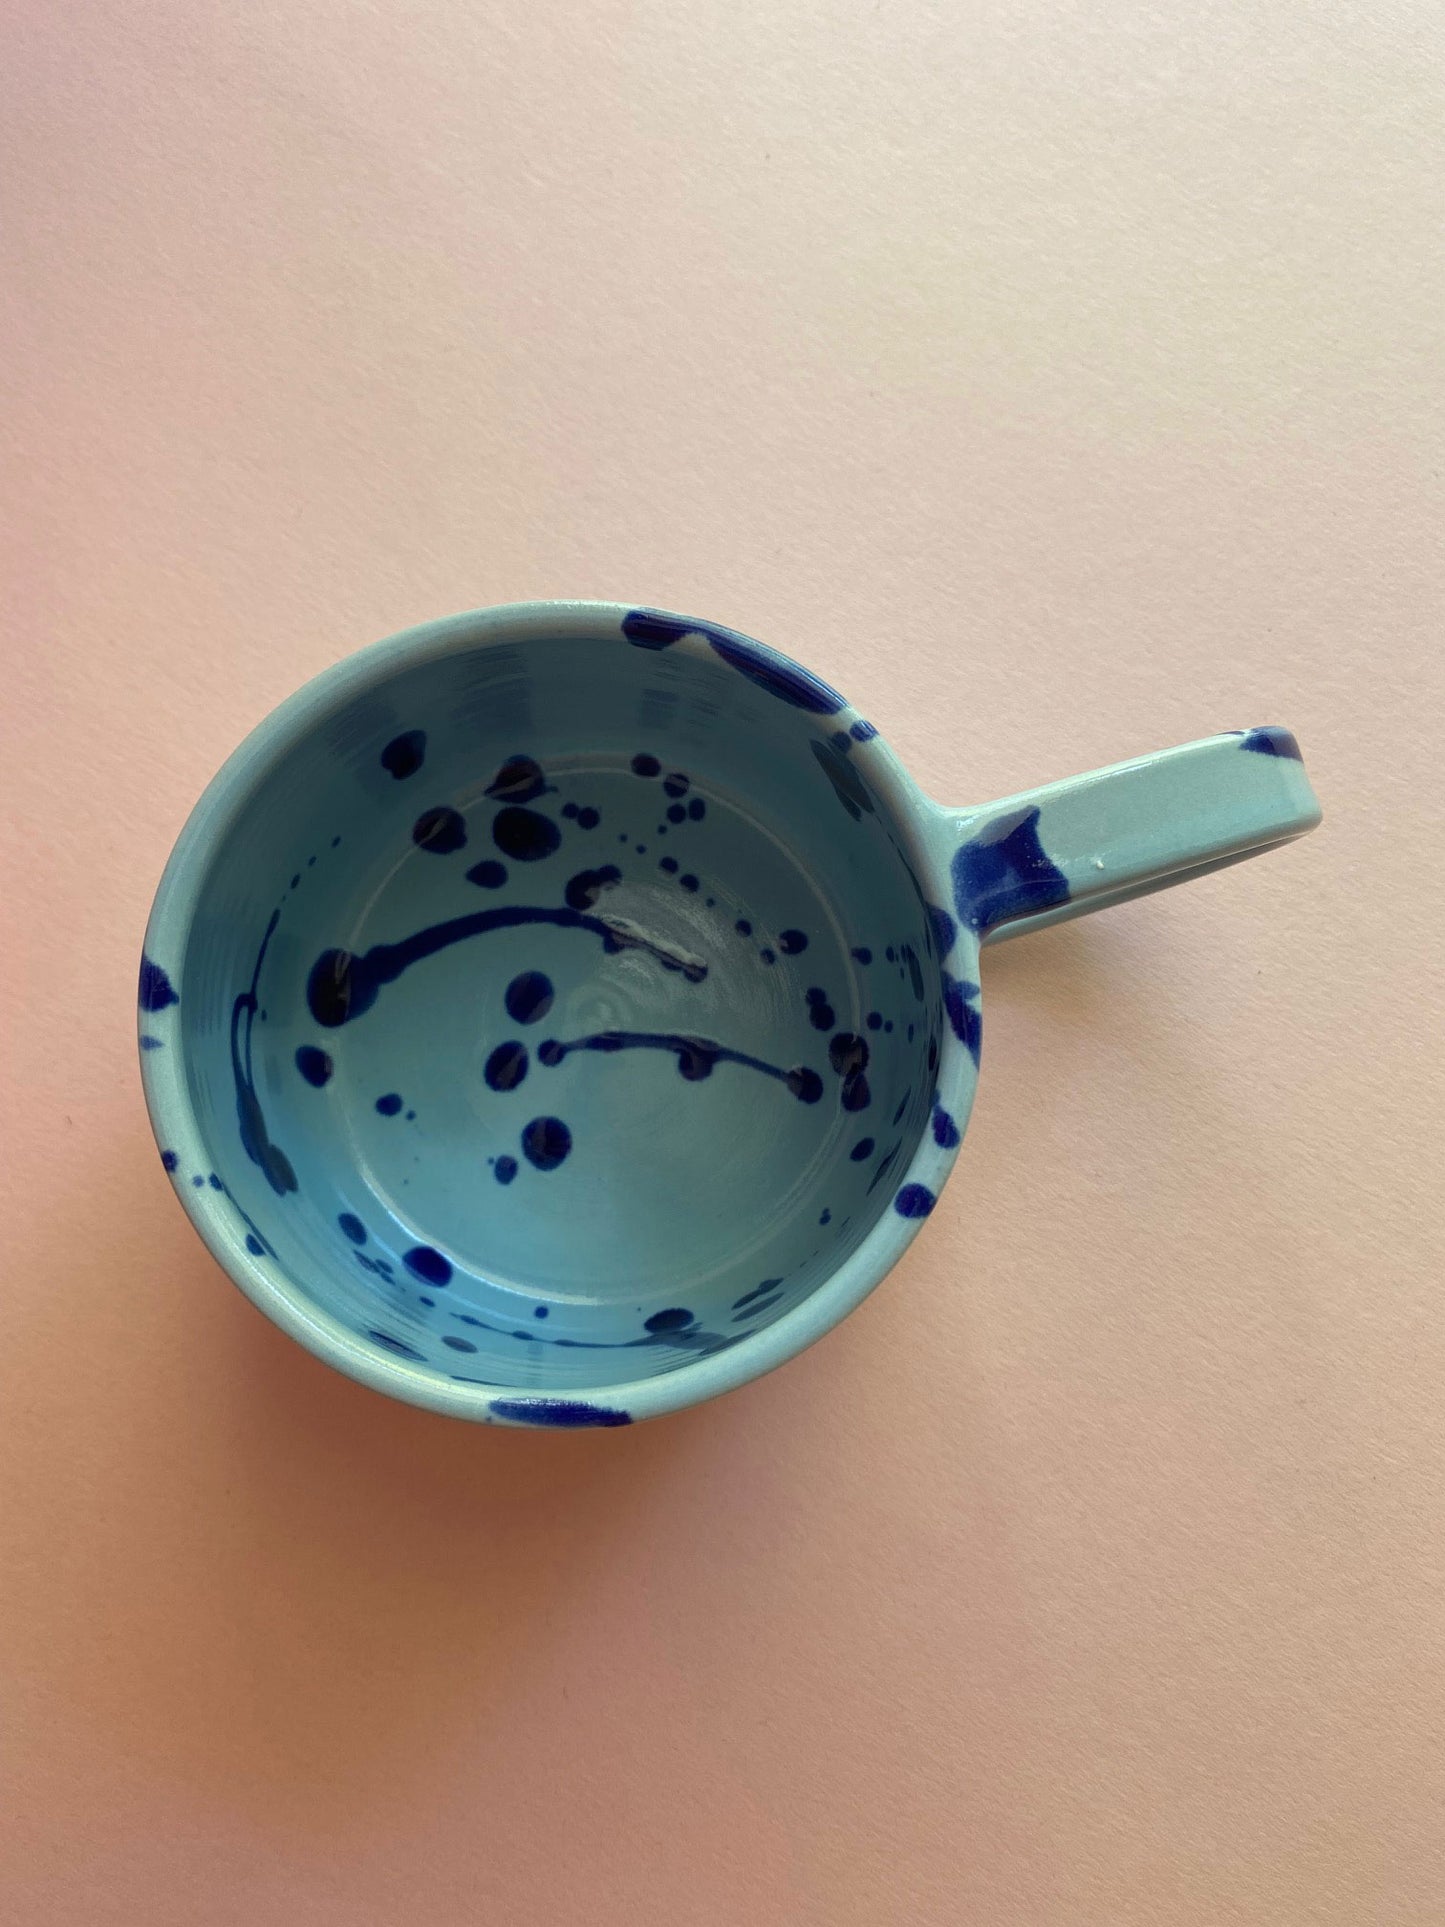 Handmade By Marle – Tasse hellblau/blau gesprenkelt